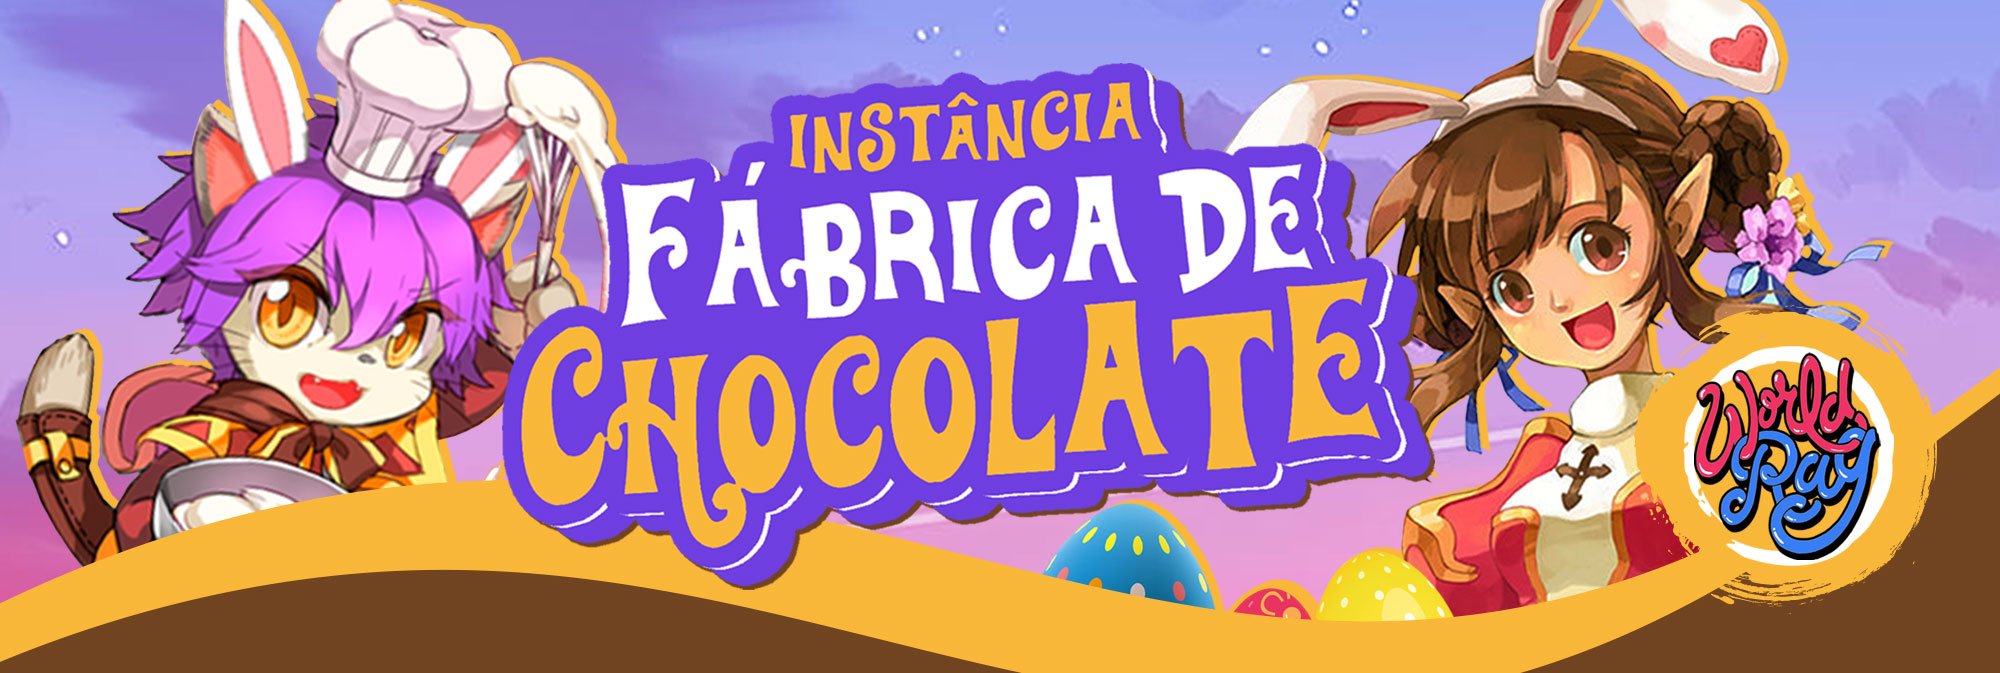 [Evento] Fábrica de Chocolate